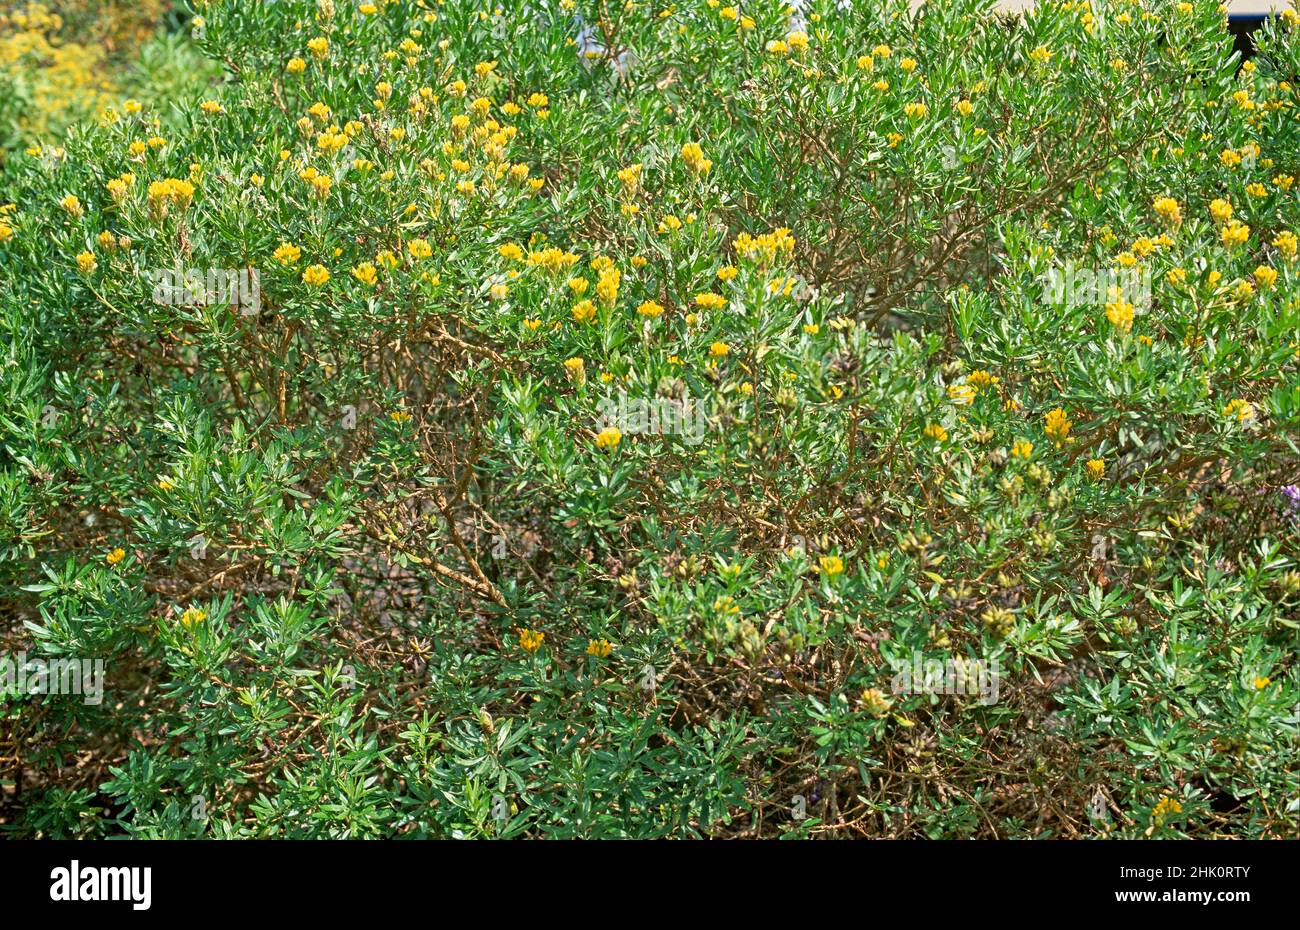 El escoba de hojas de aguja (Genista linifolia) es un arbusto nativo de las Islas Canarias, el sur de la Península Ibérica y el noroeste de África. Foto de stock